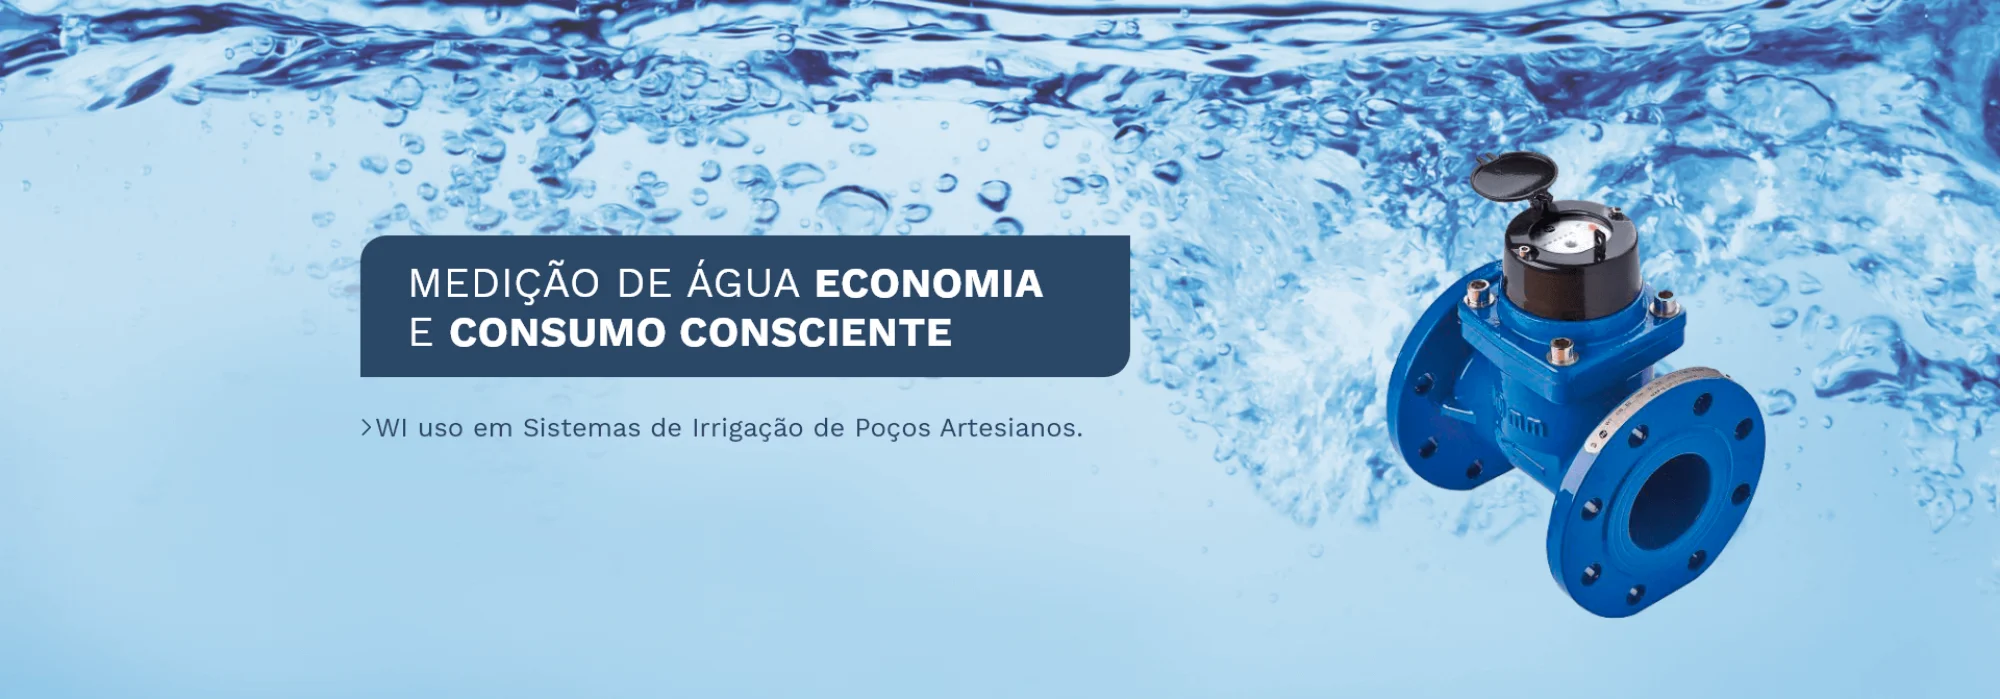 Medição de Água Economia e Consumo Consciente